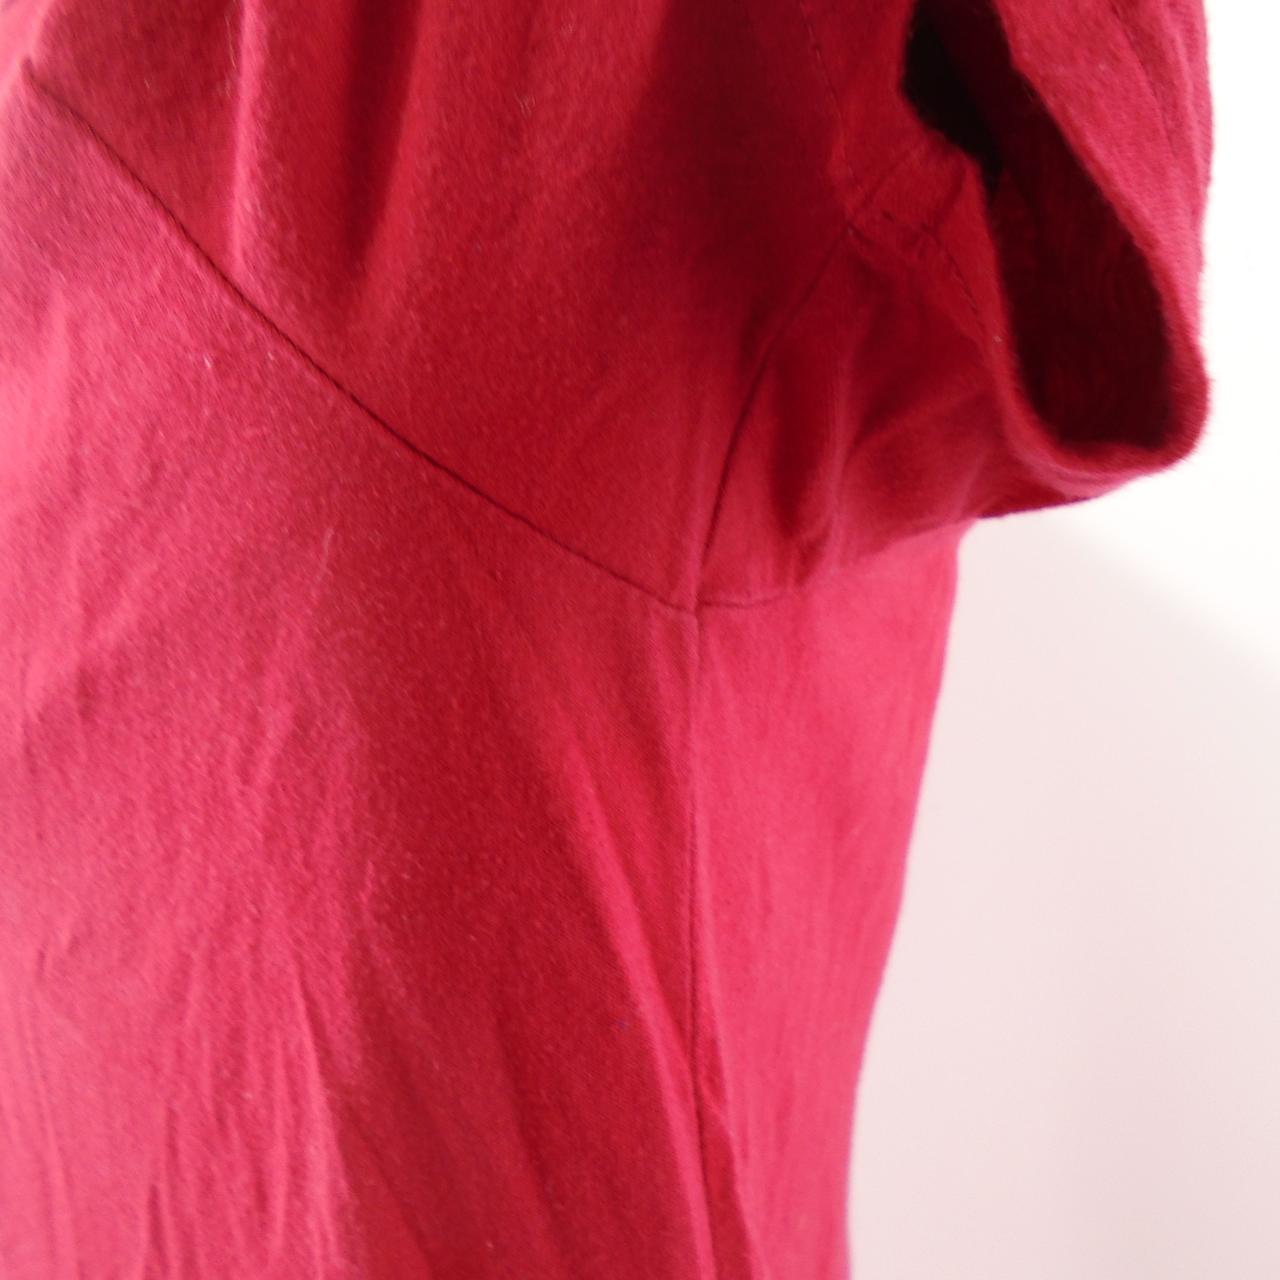 Herren-T-Shirt Hollister. Rot. L. Gebraucht. Gut